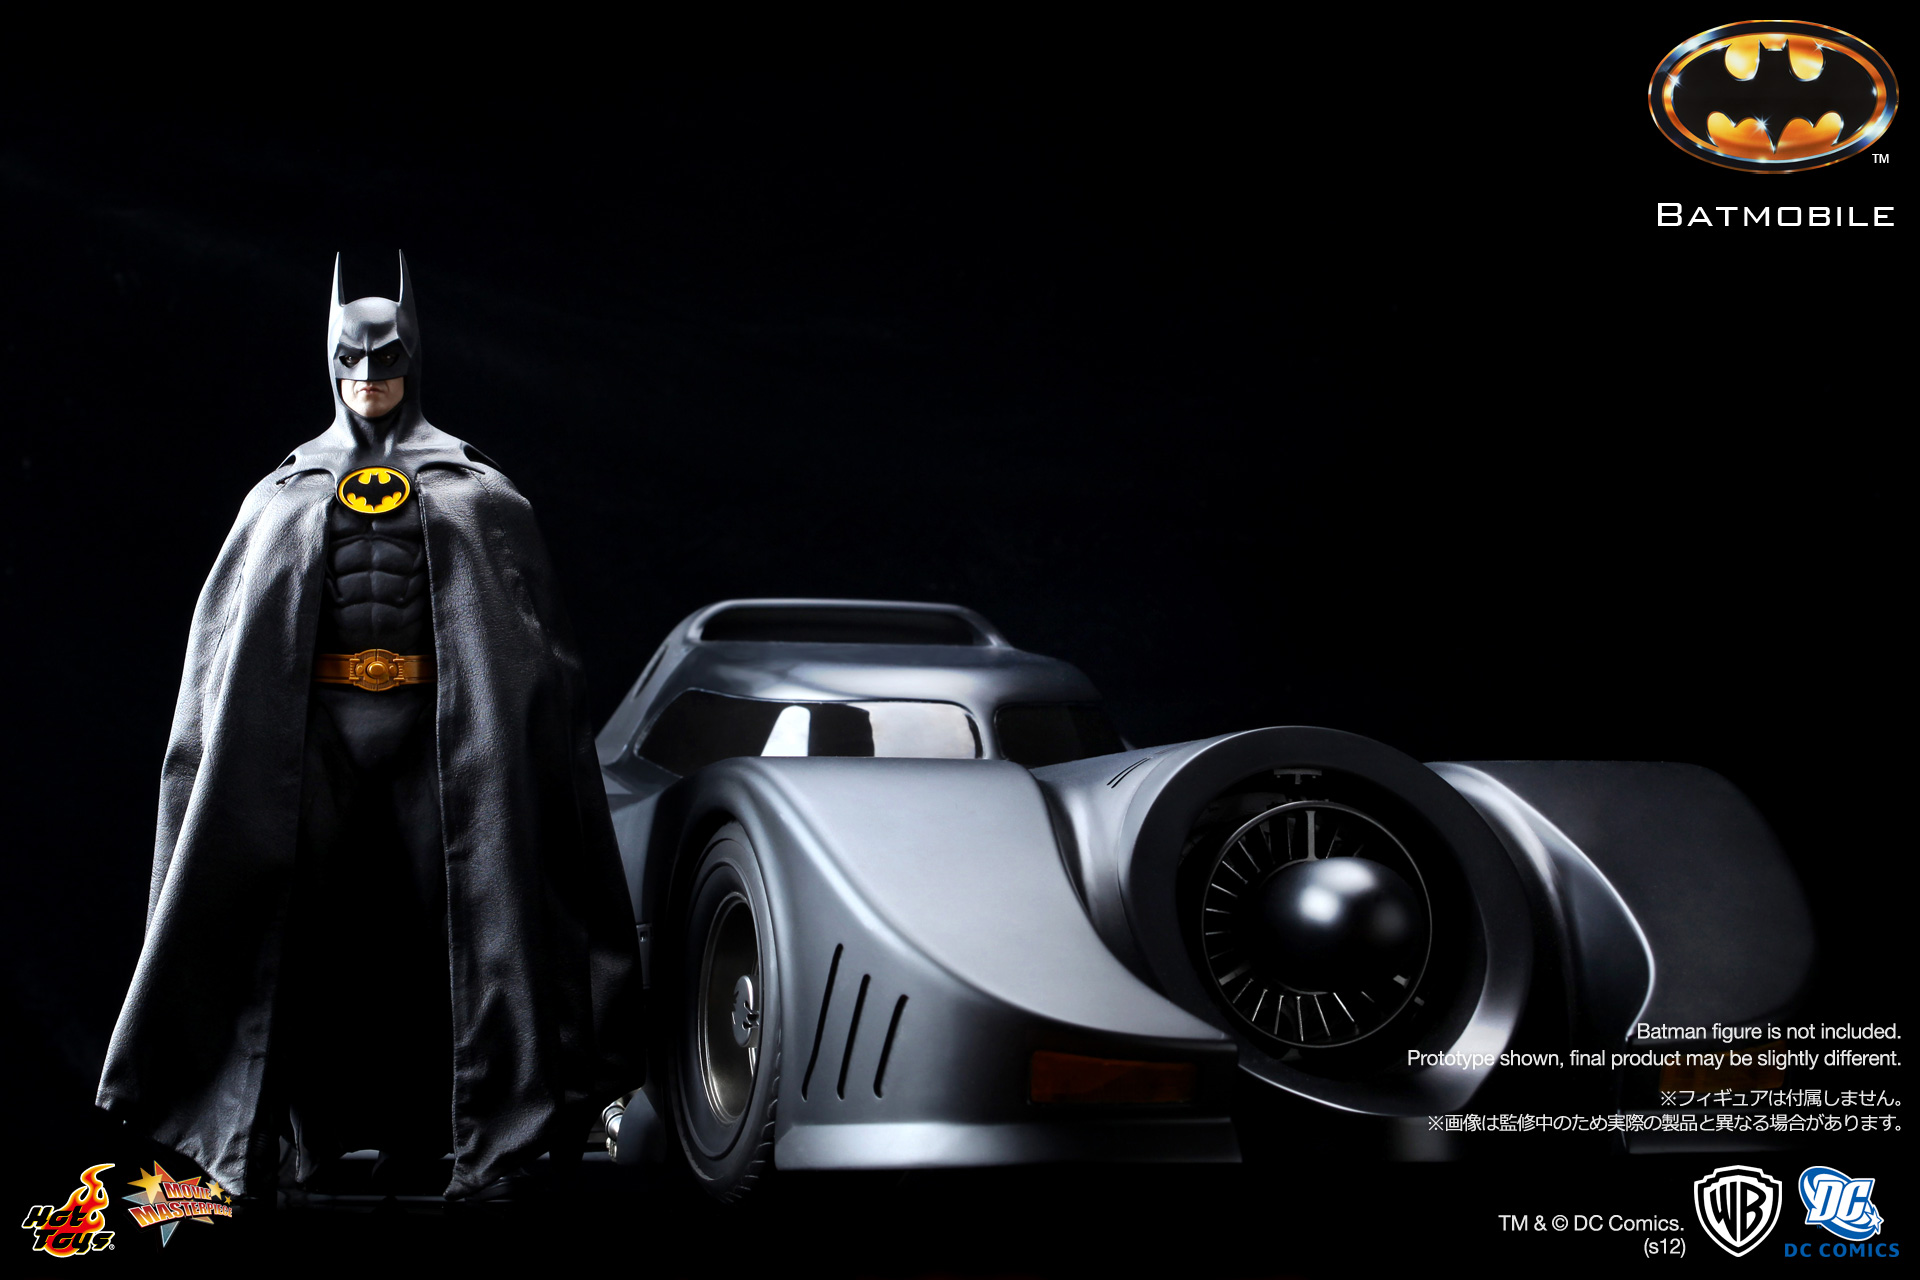 Batmobile Wallpaper Top Pictures Gallery Online